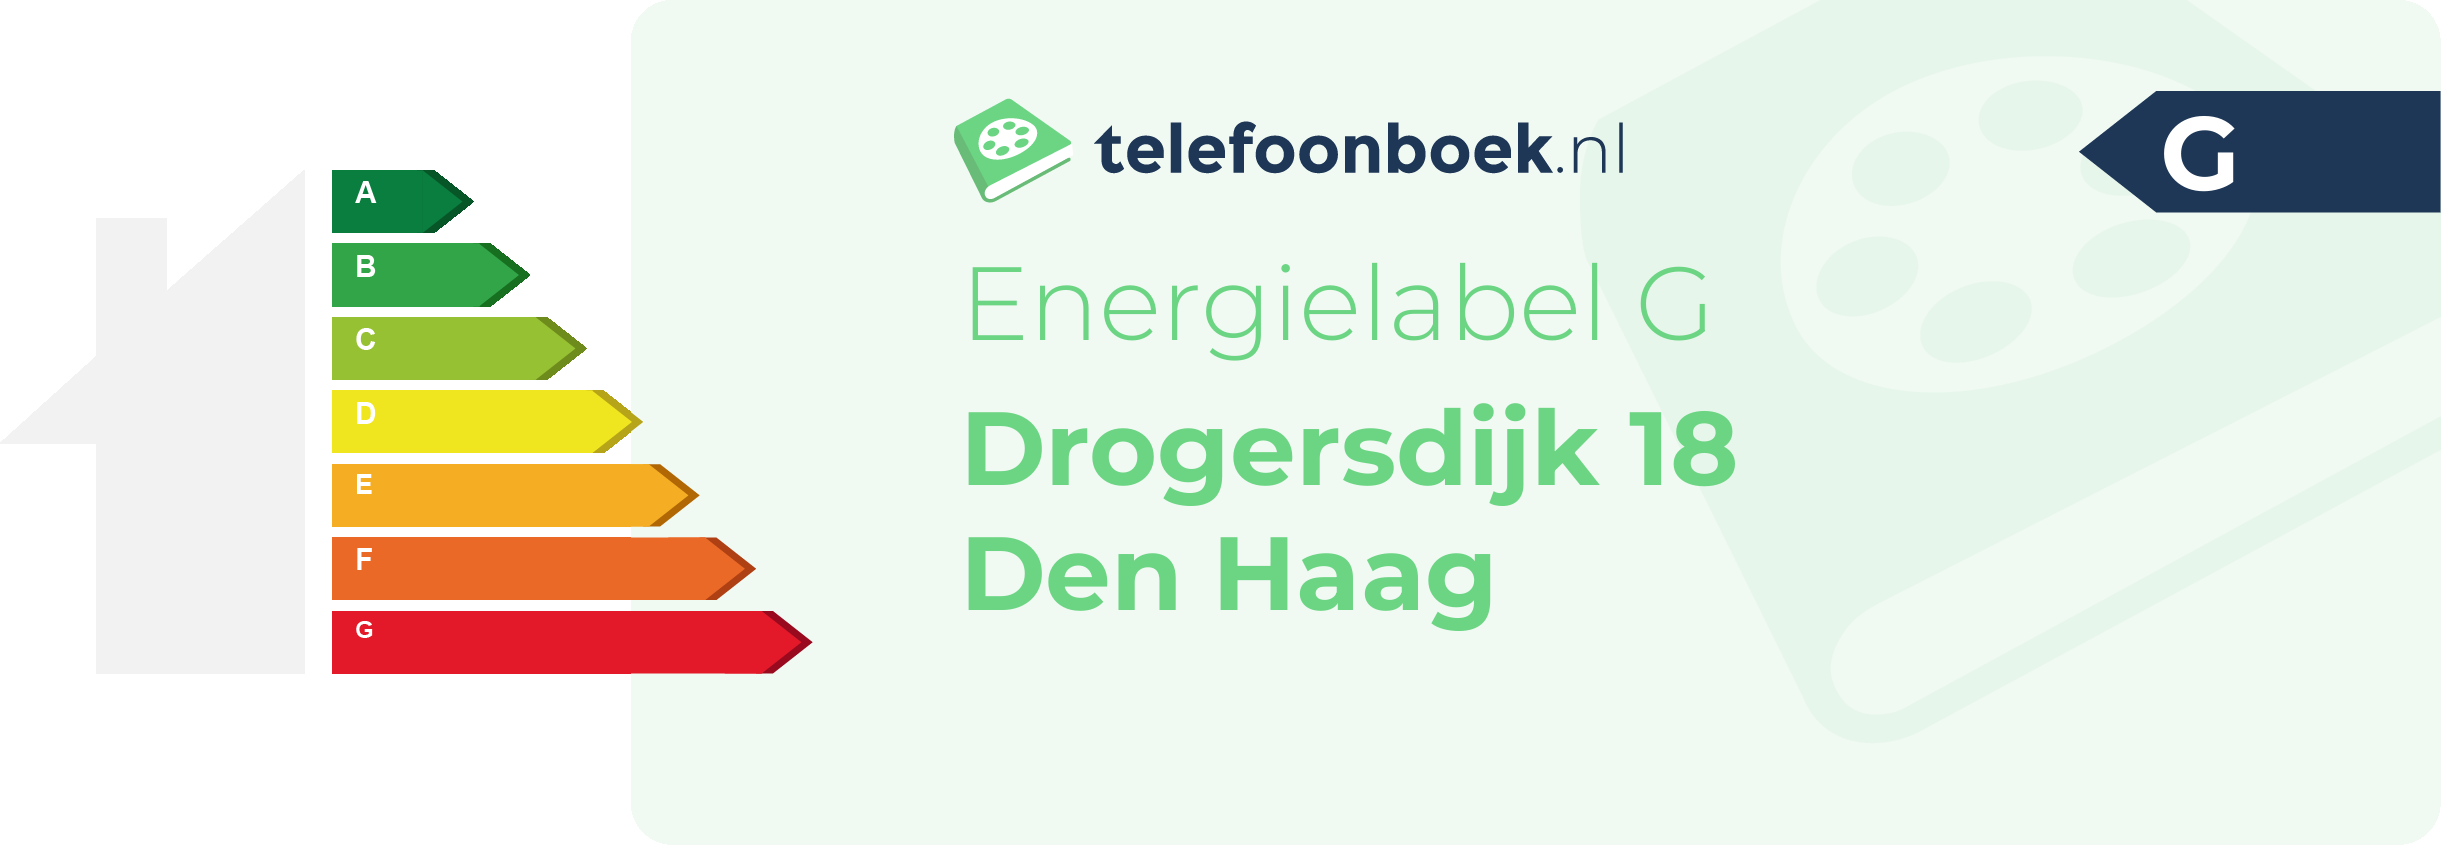 Energielabel Drogersdijk 18 Den Haag